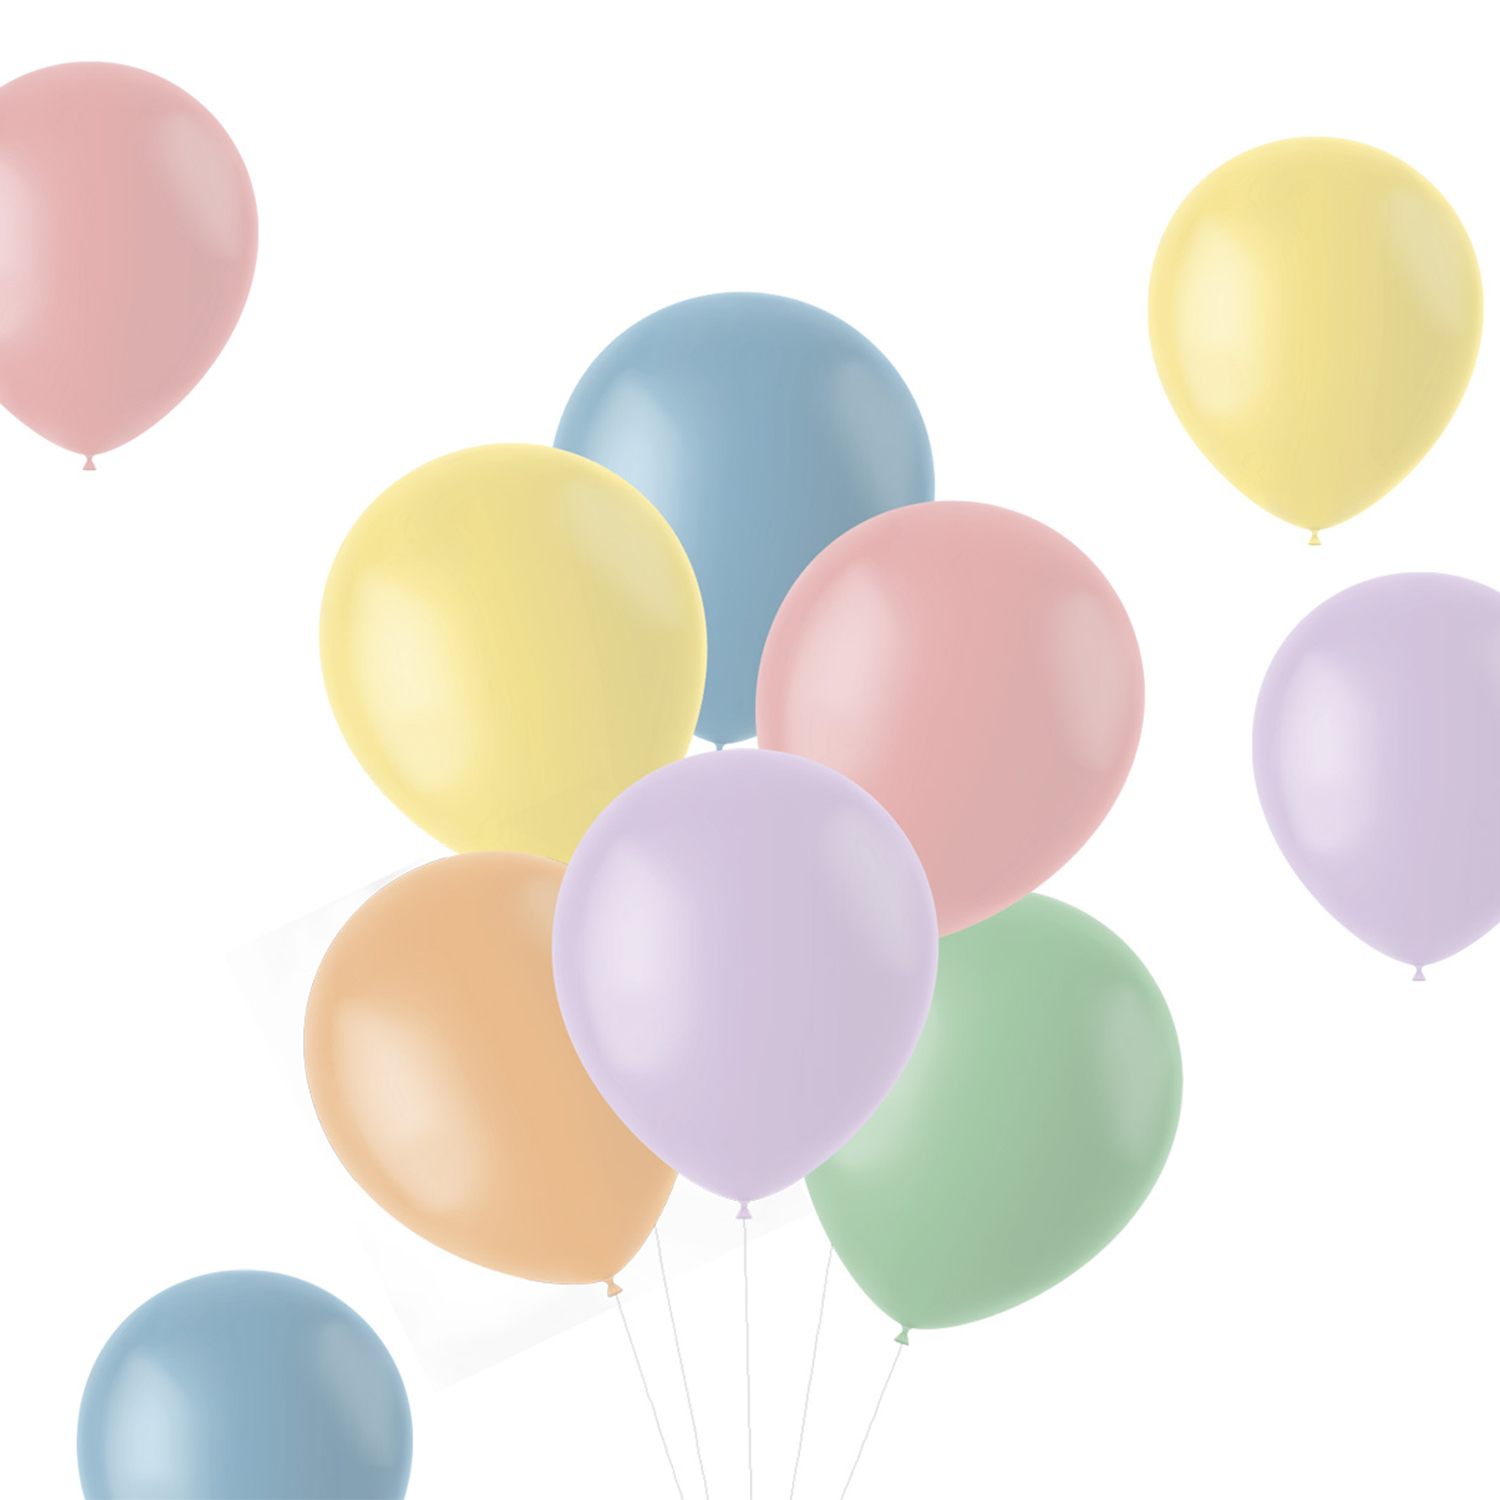 NEU Latex-Luftballons matt, 33cm, Pastelltöne bunt gemischt, 50 Stück